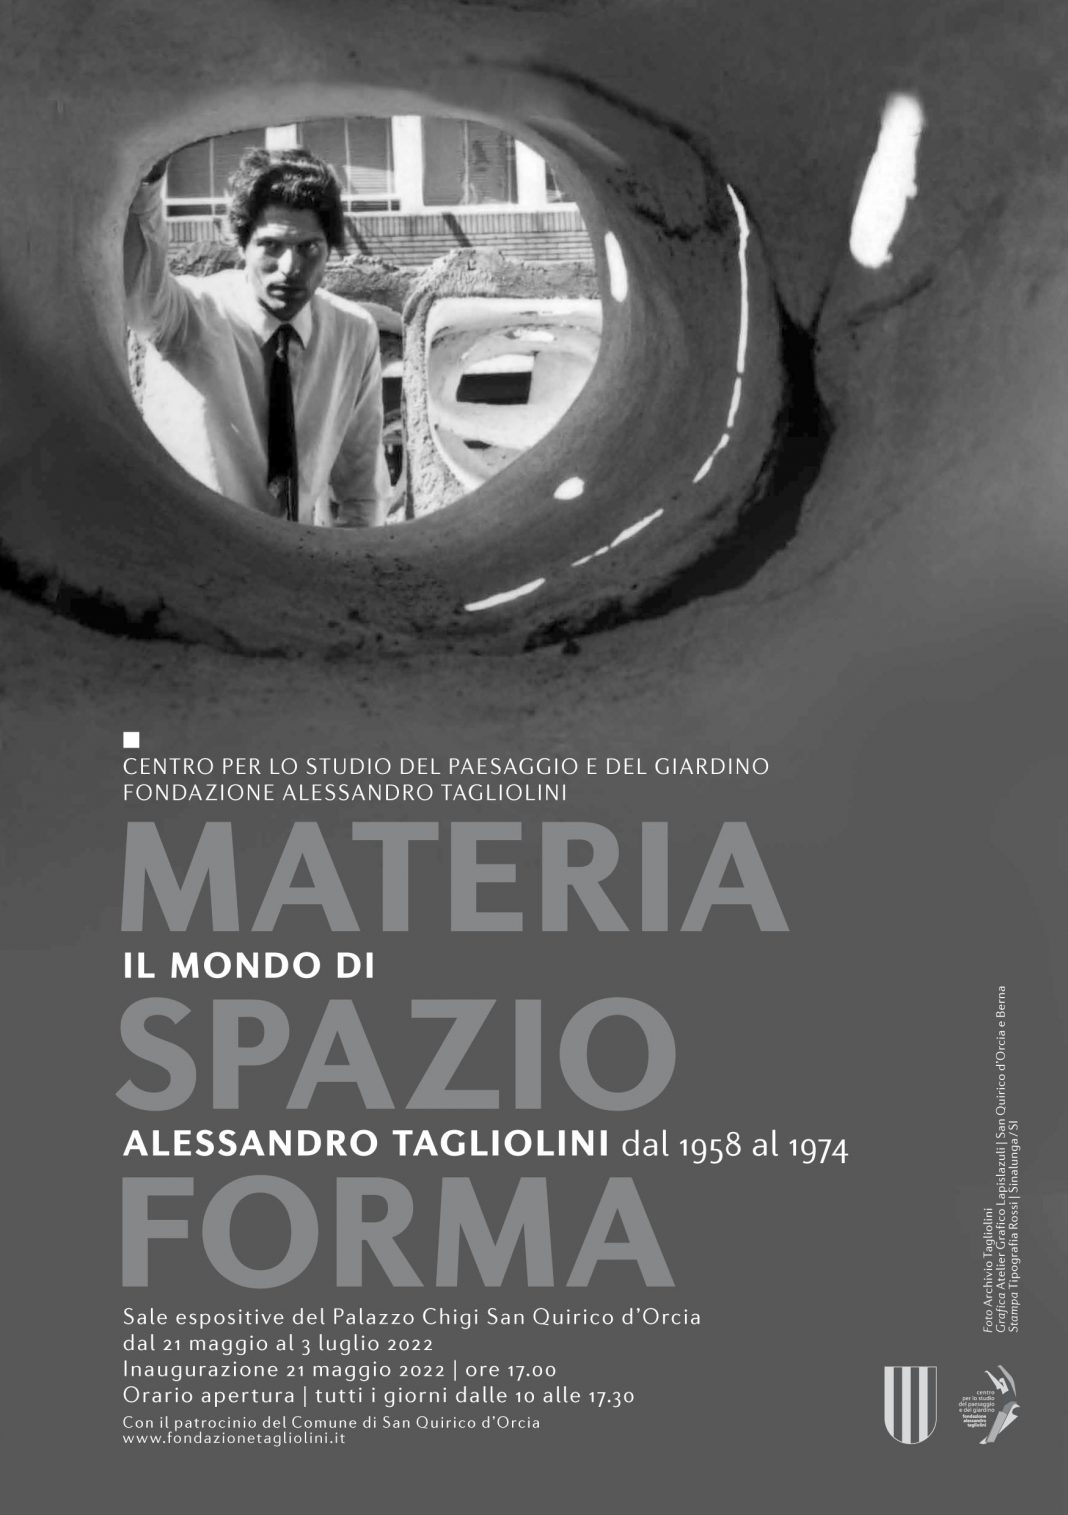 Materia-Spazio-Forma. Il mondo di Alessandro Tagliolini dal 1958 al 1974https://www.exibart.com/repository/media/formidable/11/img/316/Mostra-Tagliolini-1068x1515.jpg